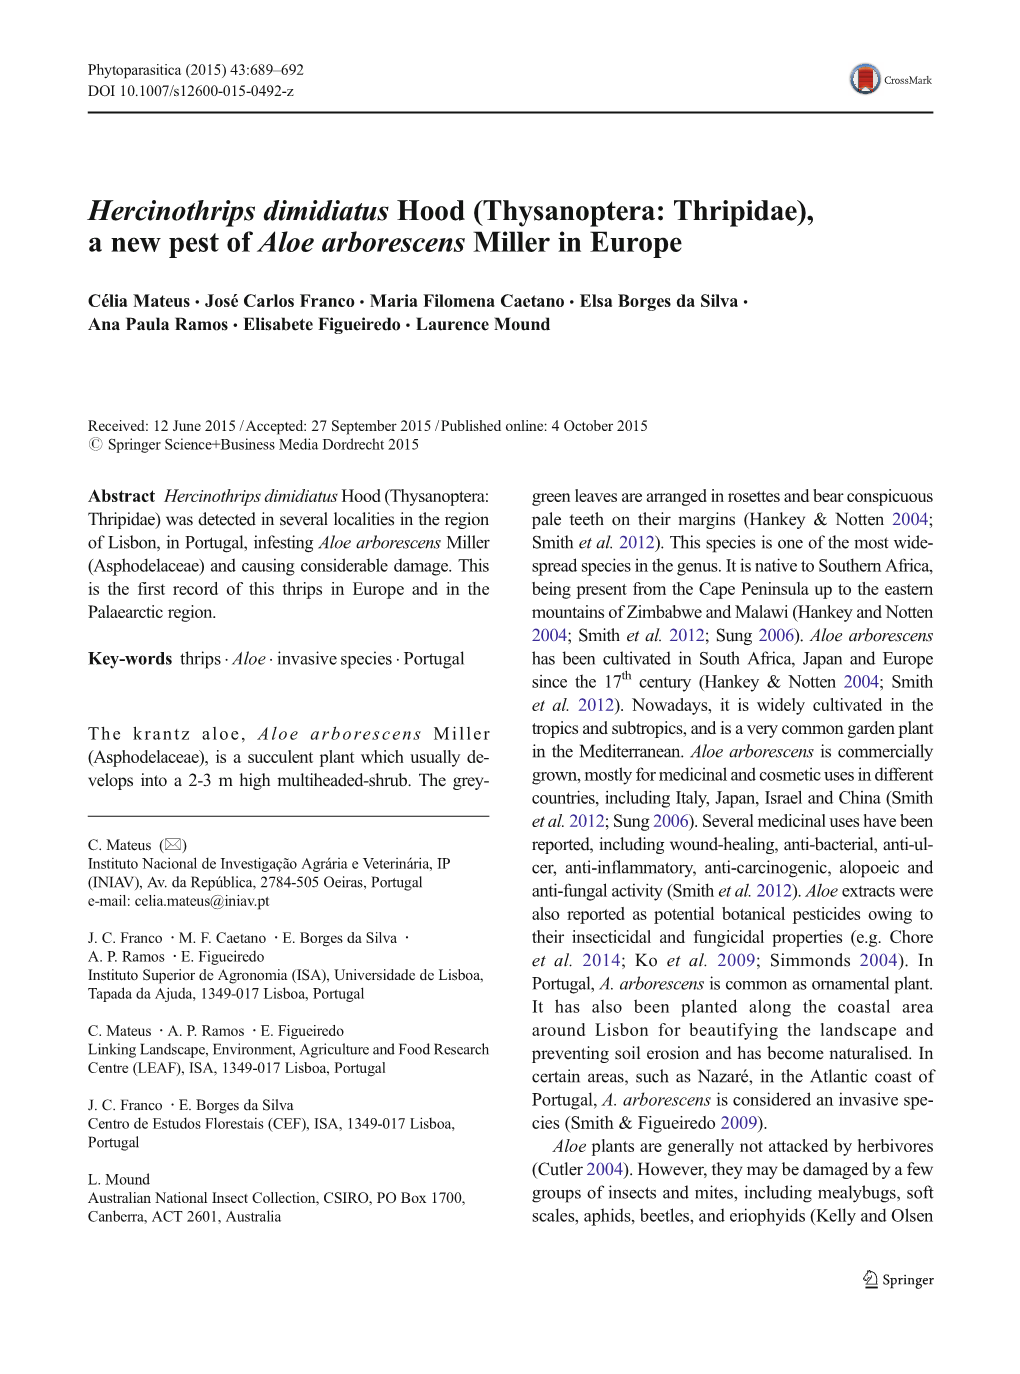 Hercinothrips Dimidiatus Hood (Thysanoptera: Thripidae), a New